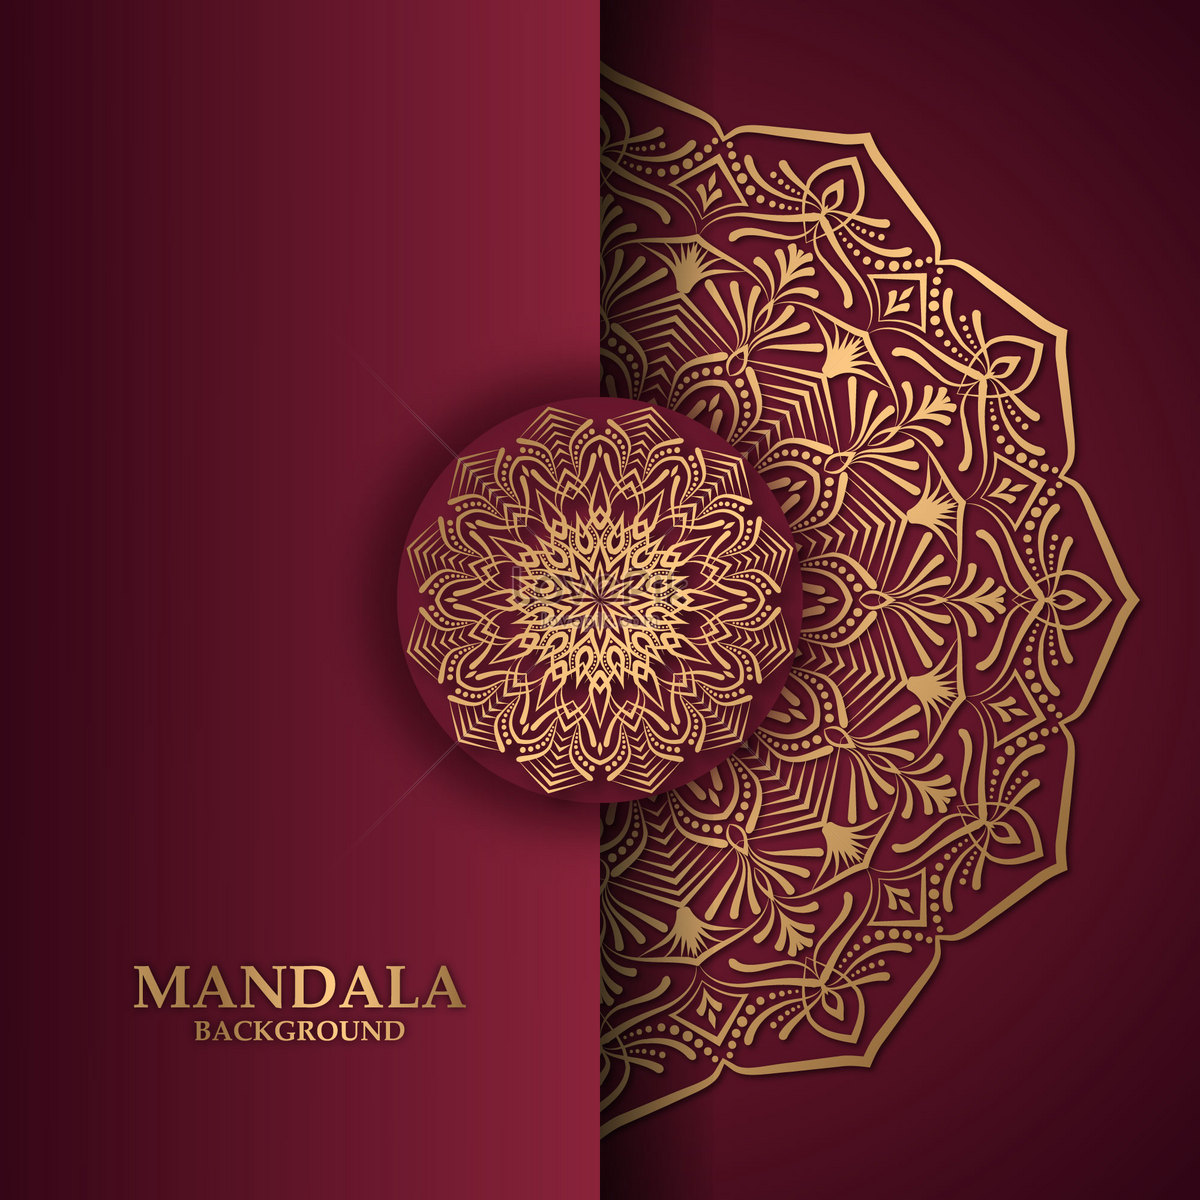 Mandala: Những họa tiết Mandala năm nay đã được cập nhật với nhiều màu sắc mới đầy sáng tạo, tạo nên những hiệu ứng tâm linh đầy thú vị cho người xem. Hãy ngắm nhìn và cảm nhận những đường nét mềm mại, tinh tế trong từng chi tiết của họa tiết Mandala.